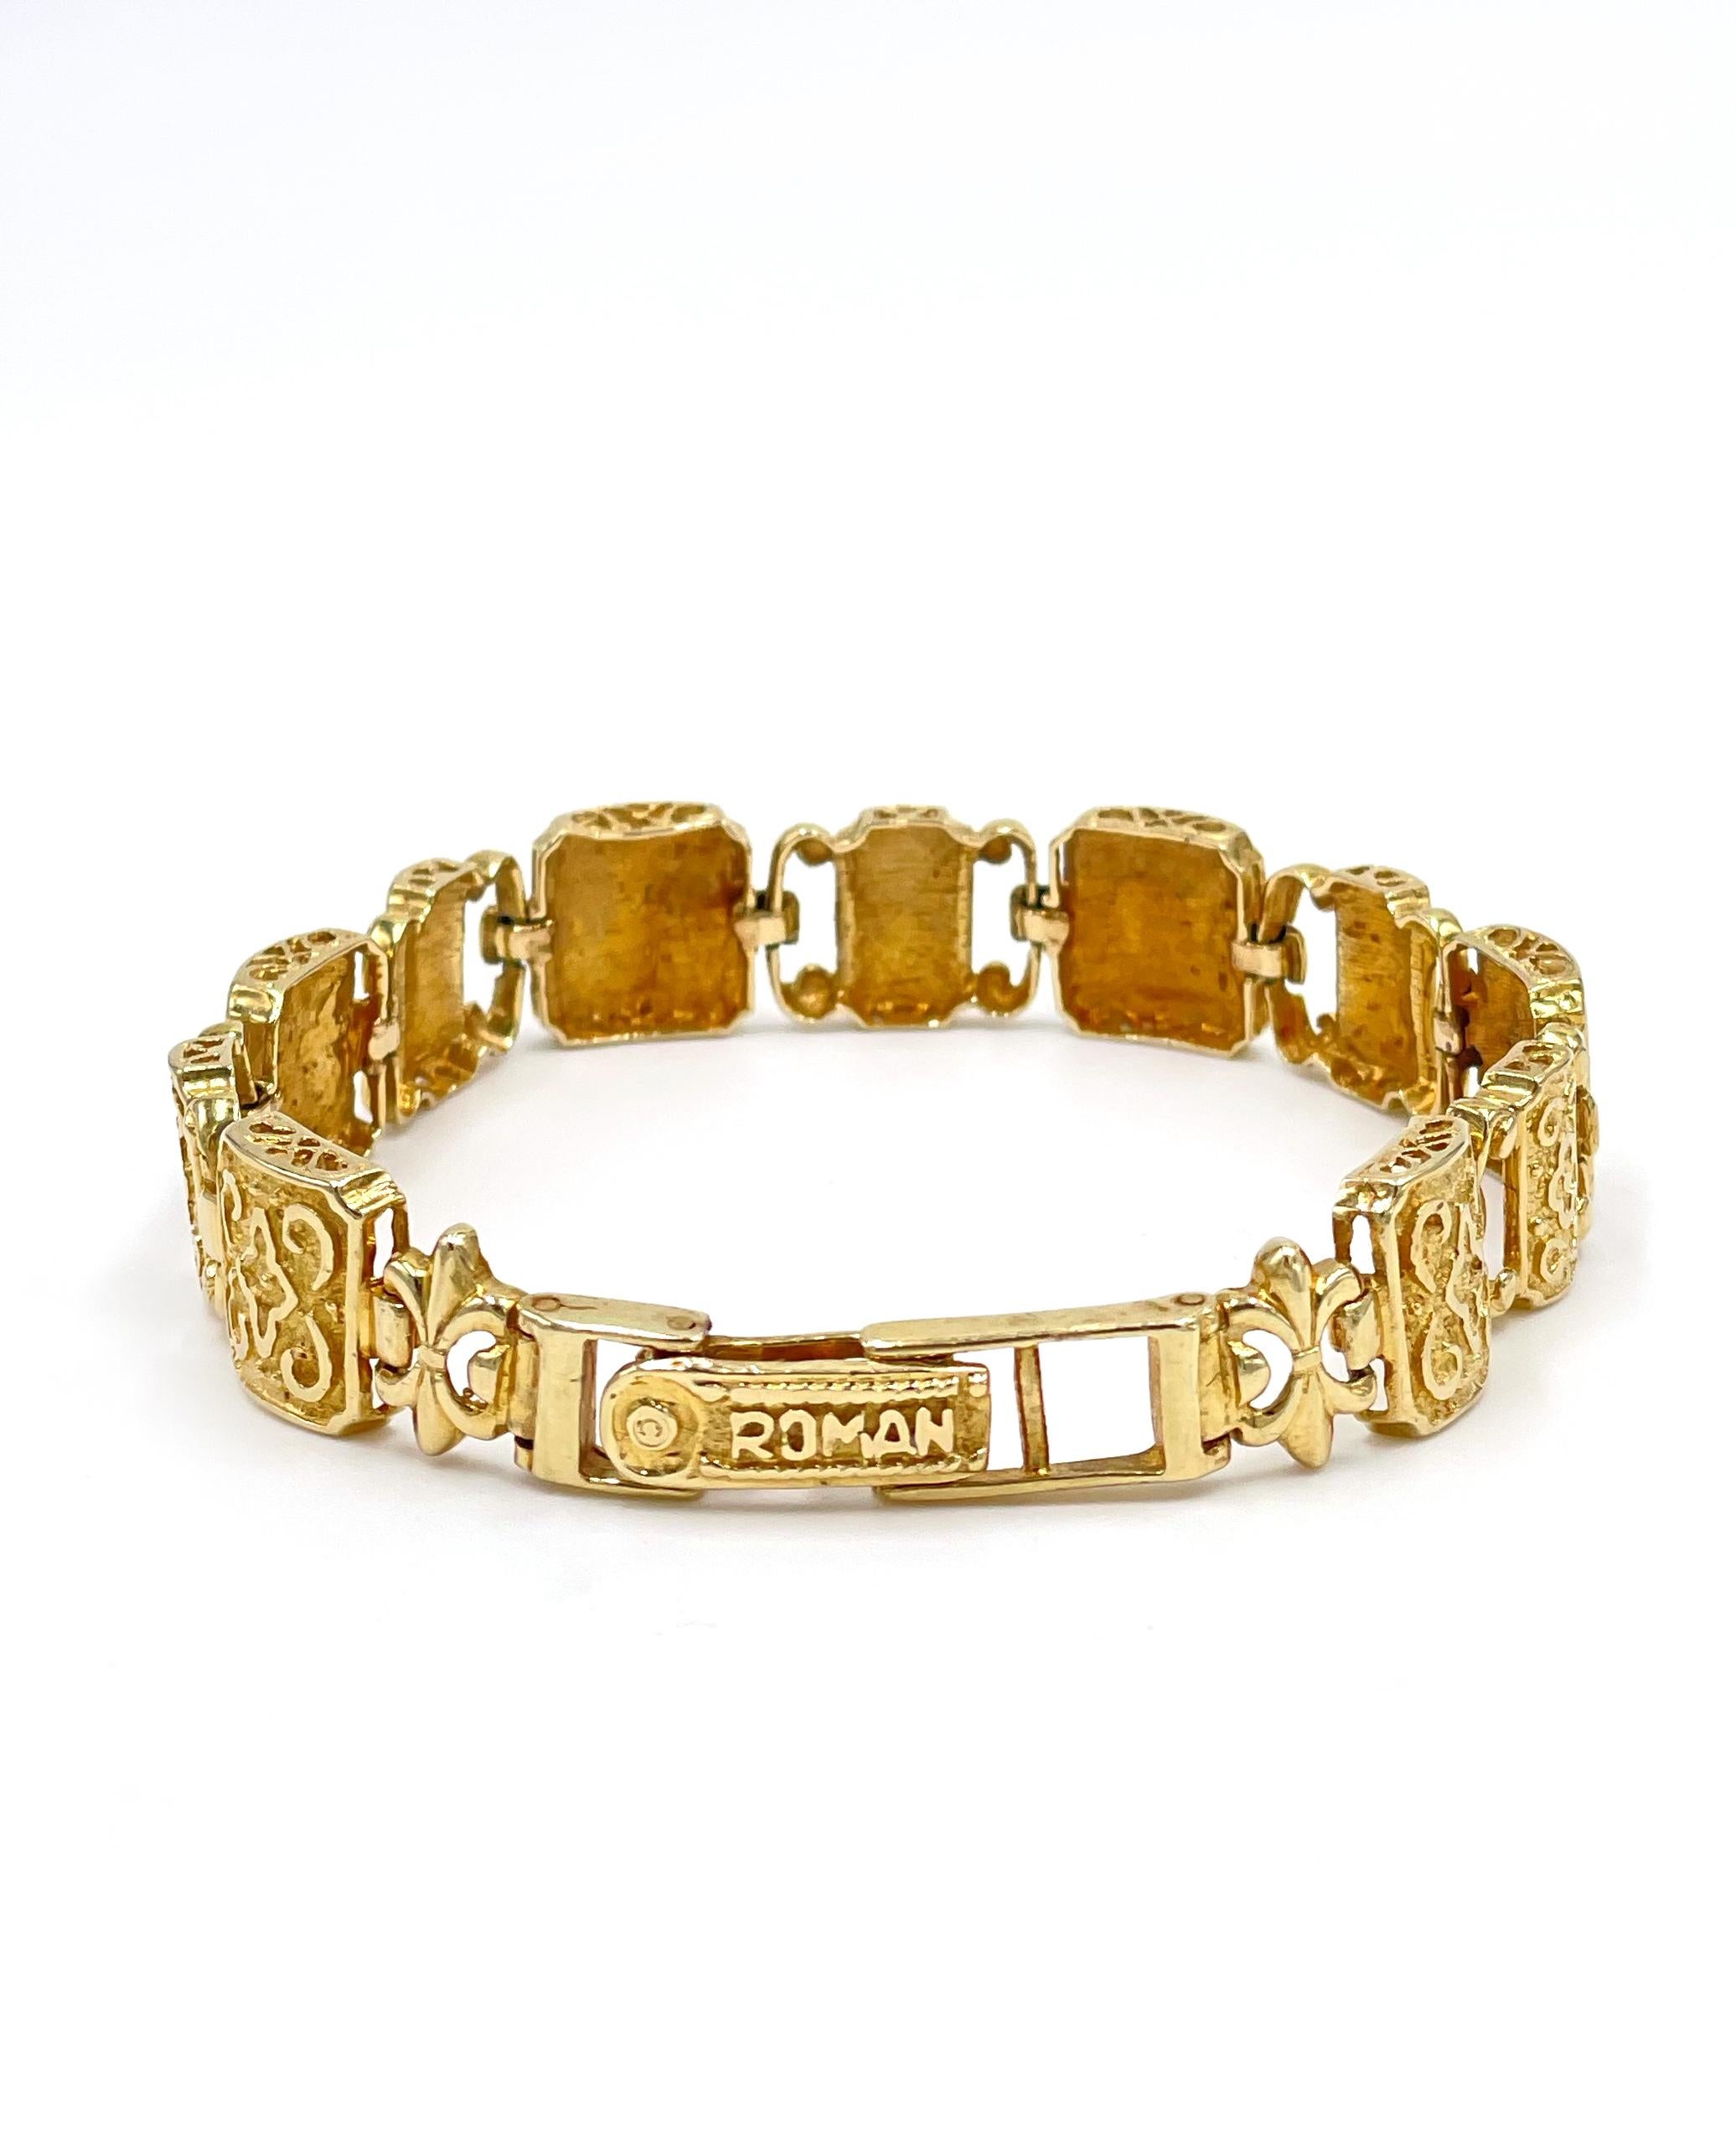 Gebrauchtes quadratisches Gliederarmband aus 14K Gelbgold mit modernem byzantinischem Design. 

* 7 Zoll lang
* 17,5 Gramm 
* 11mm breit
* Auf dem Schloss gestempelt 